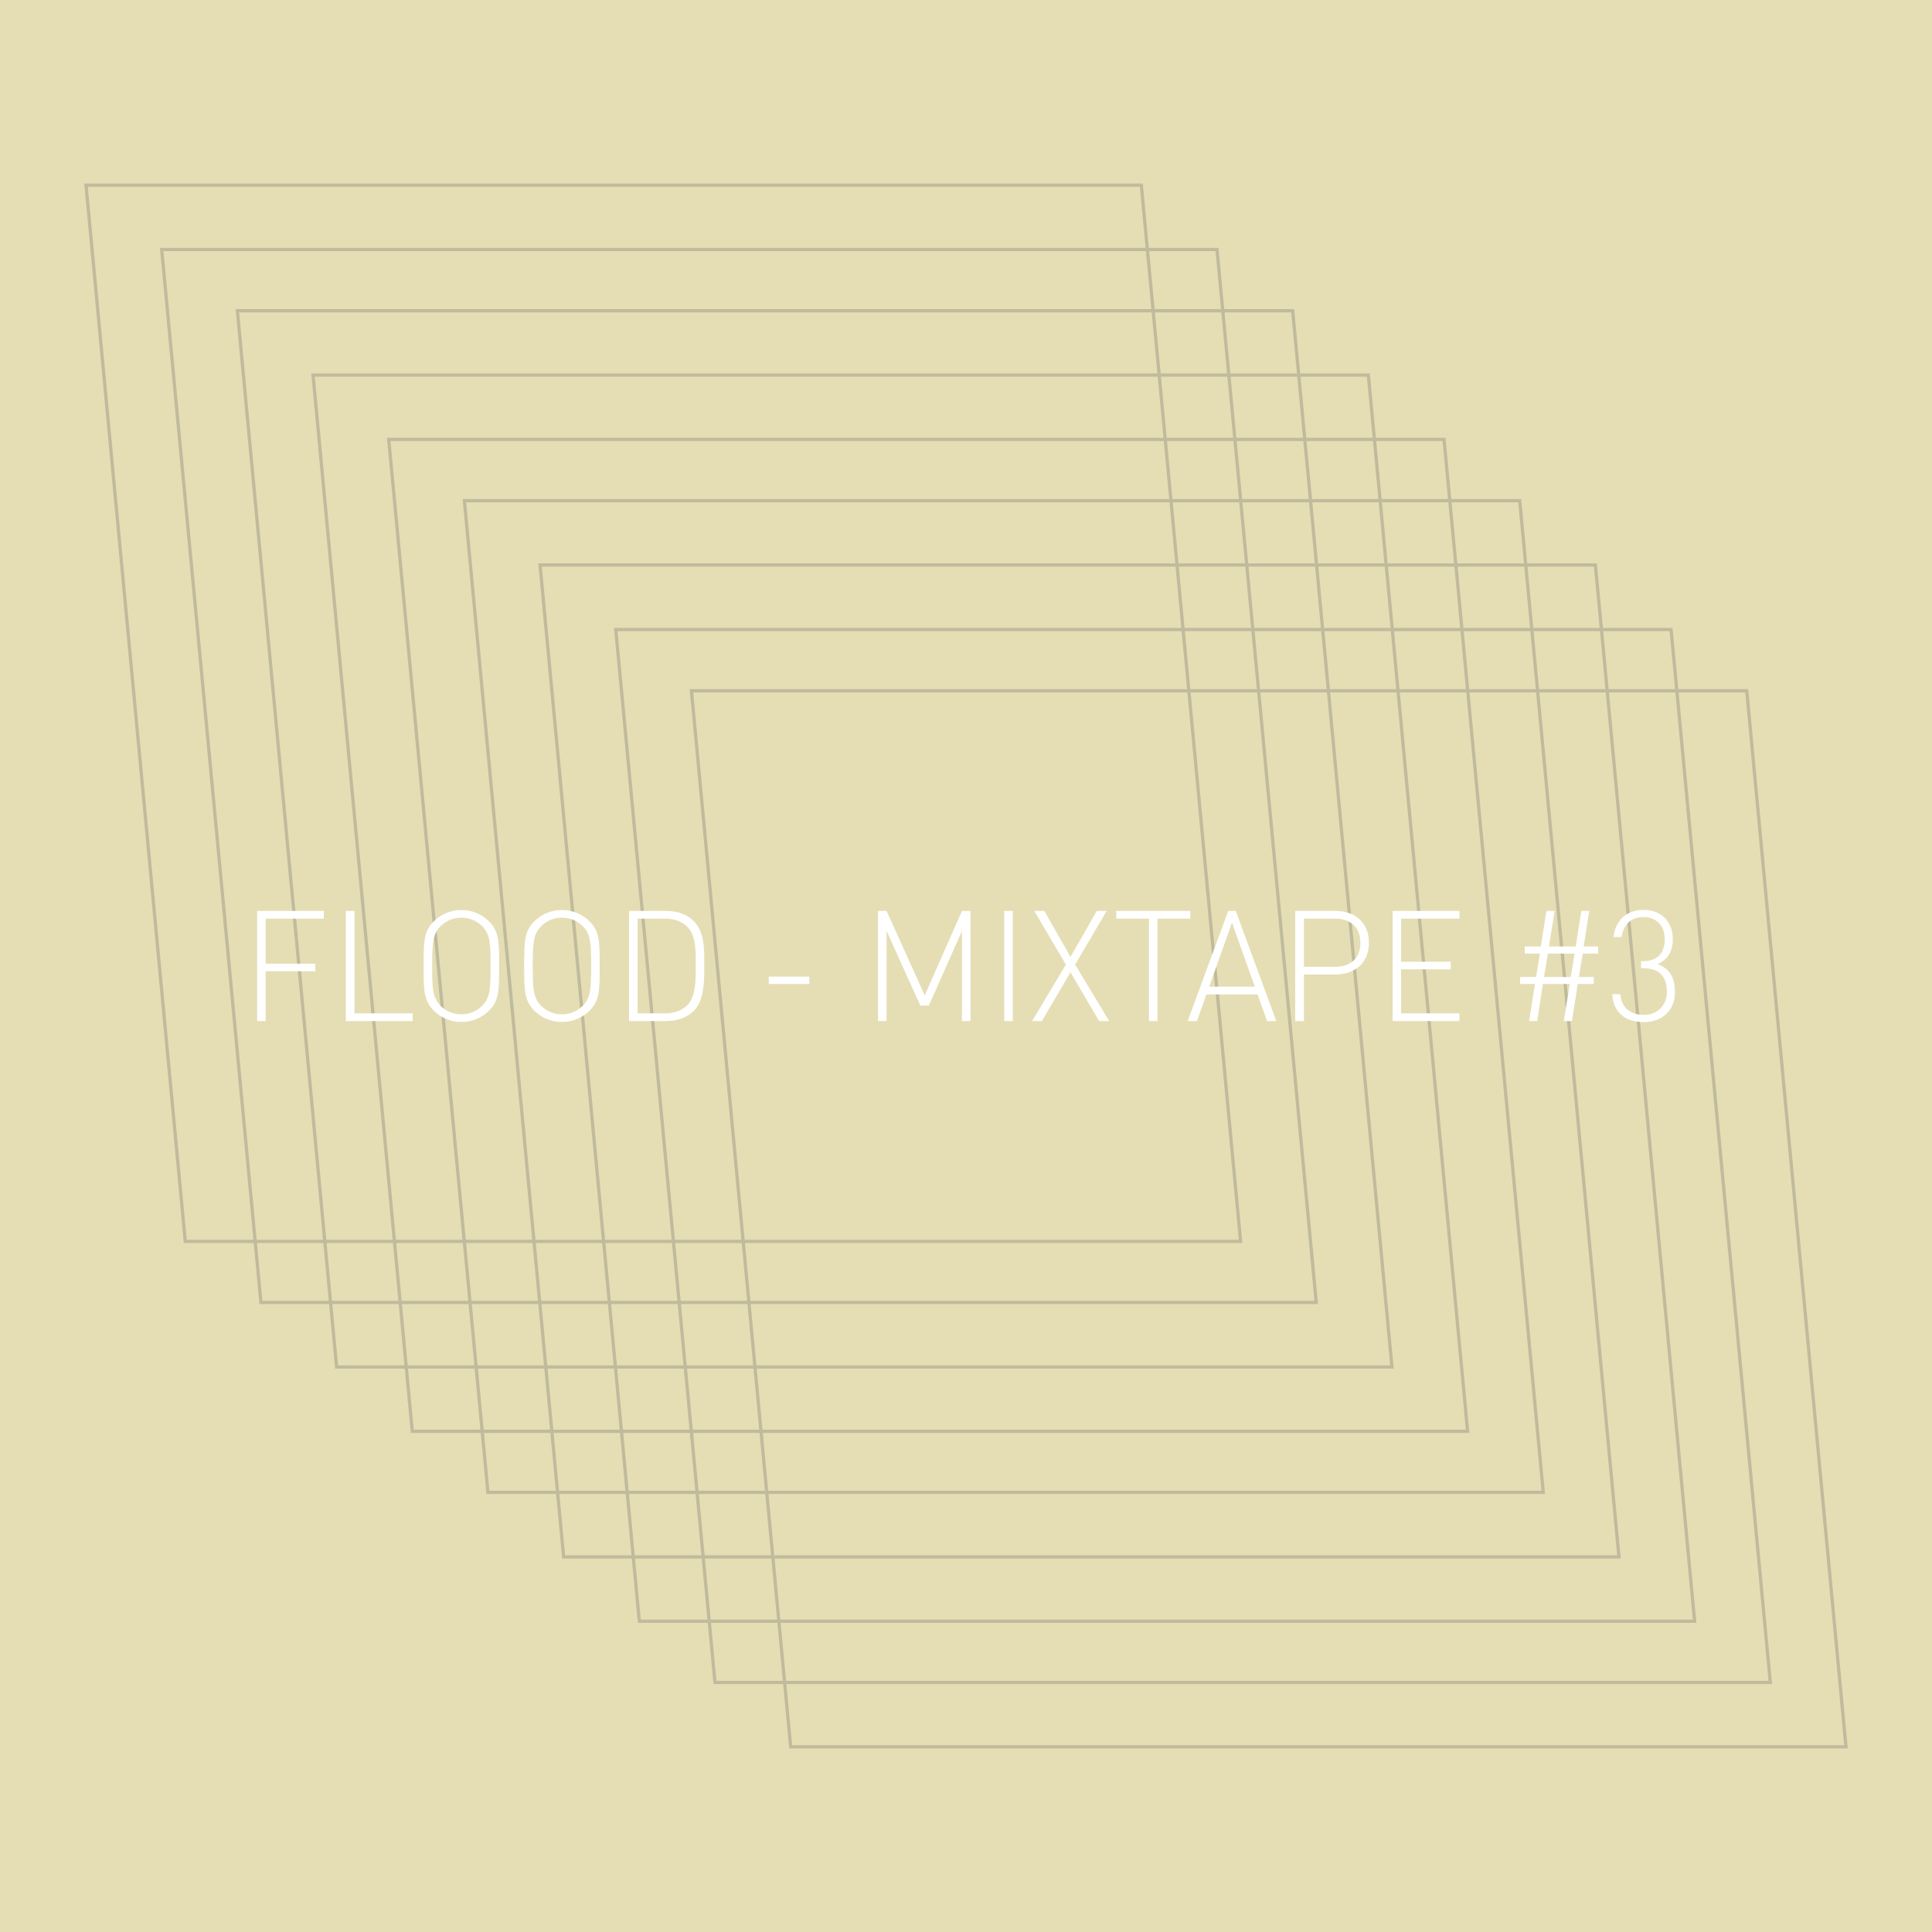 FLOOD - MIXTAPE #3